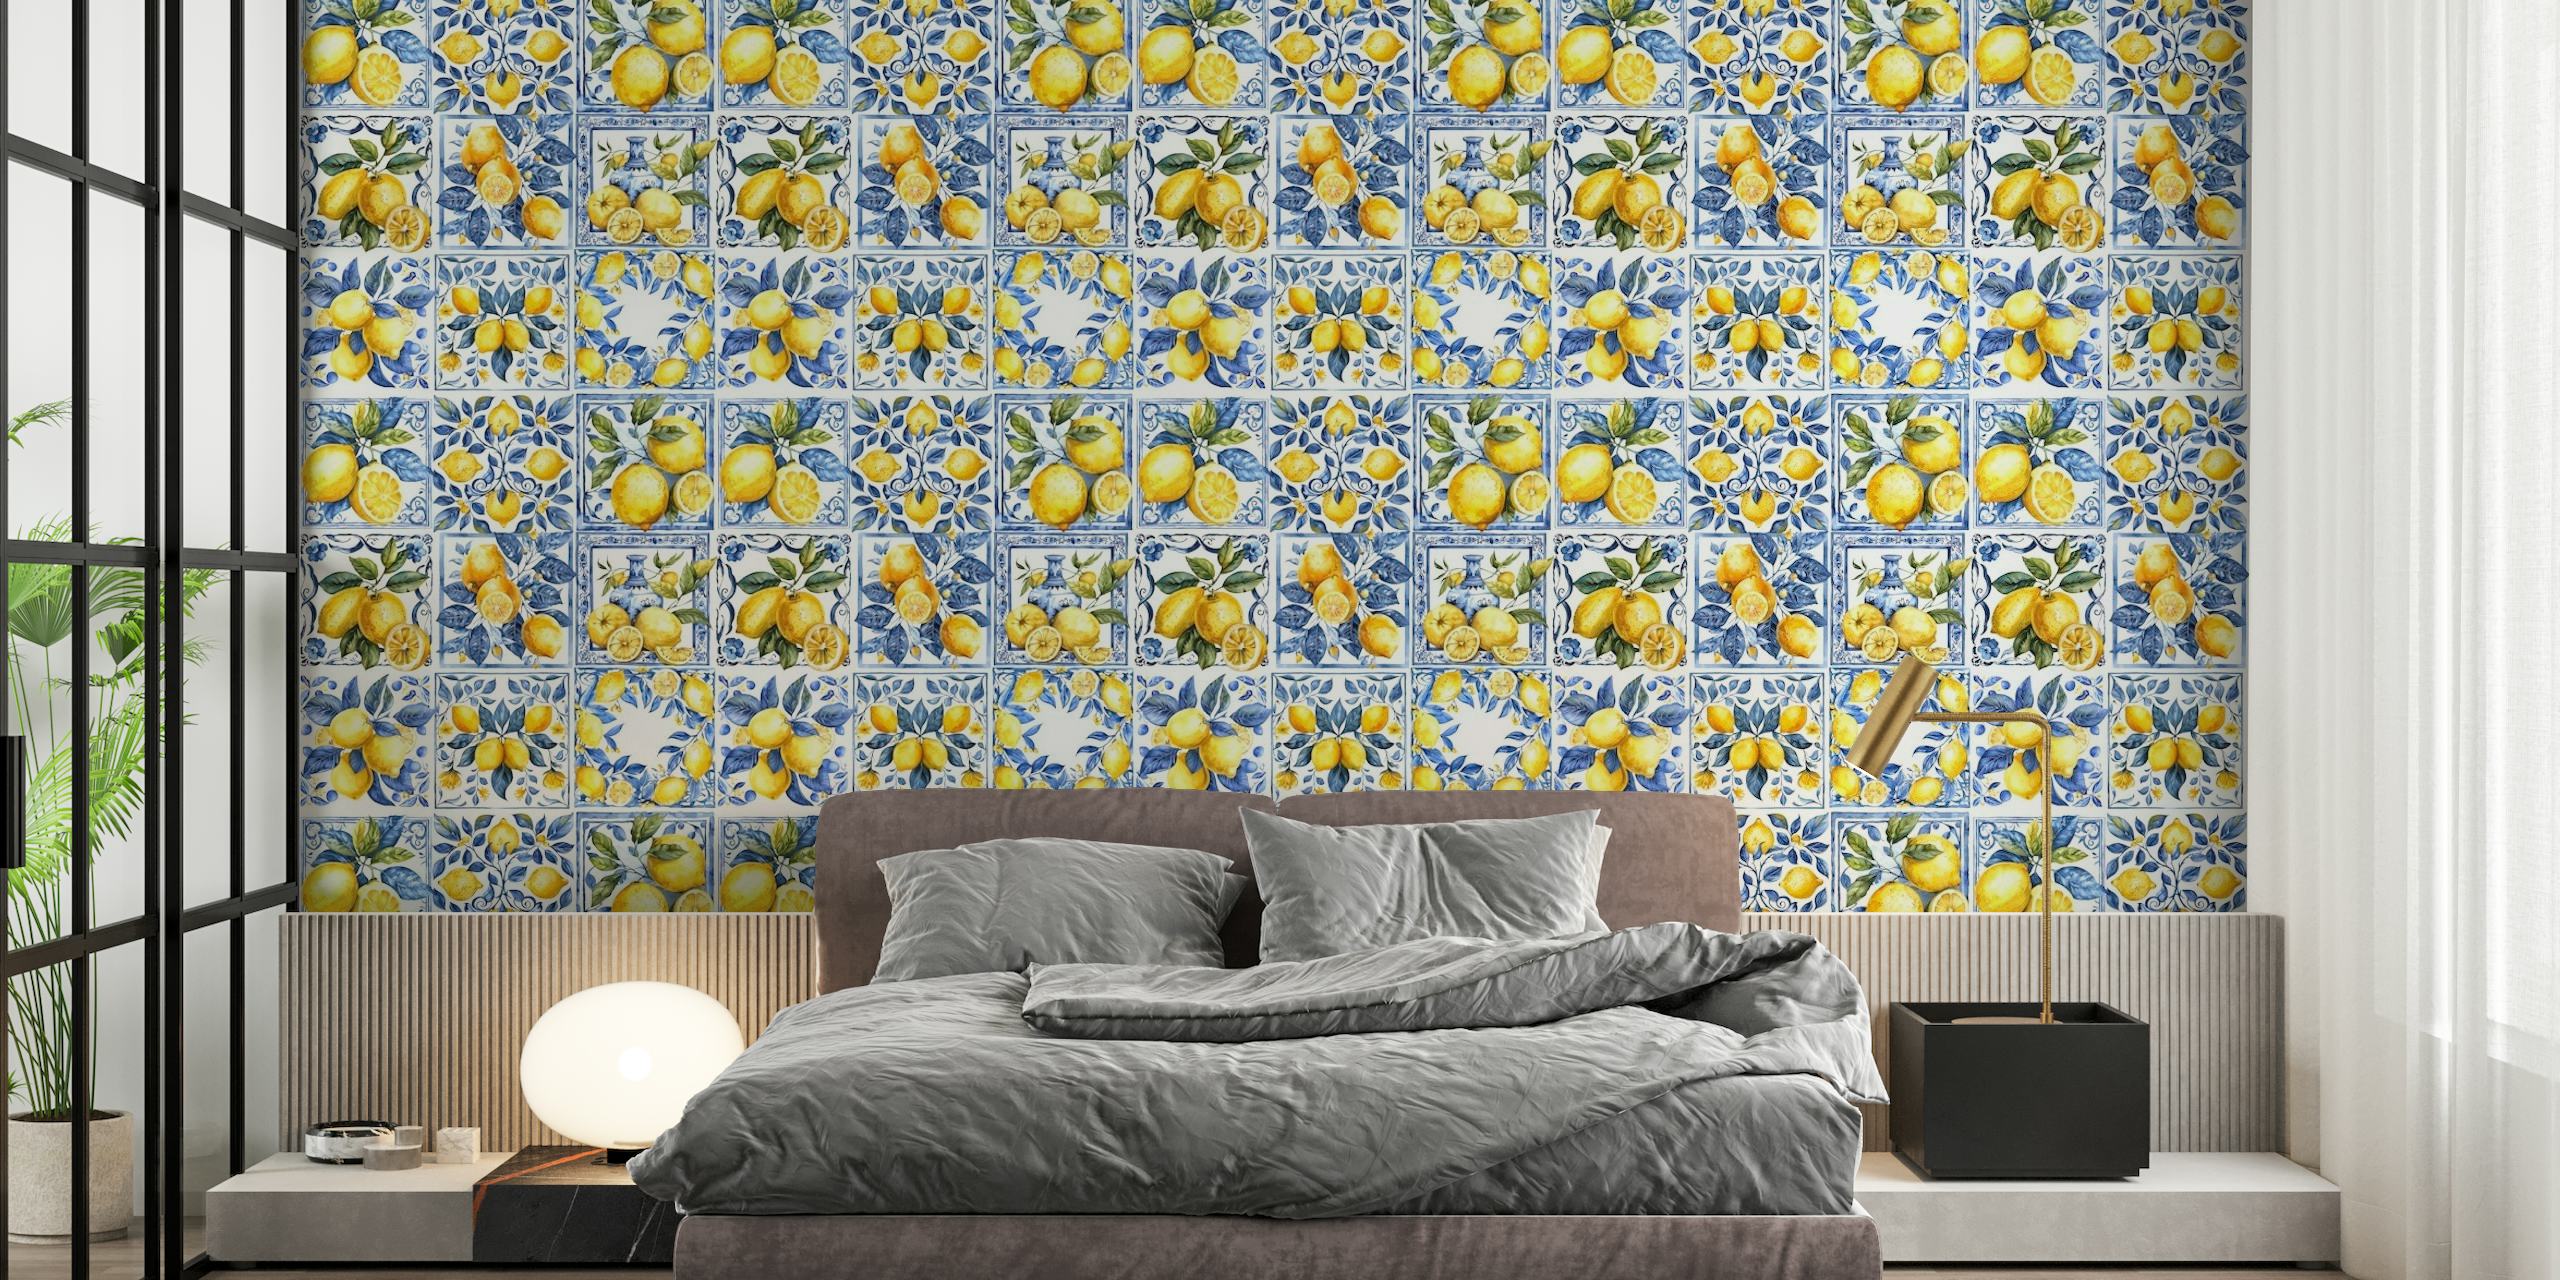 Mediterranean tiles with lemons mural papel de parede